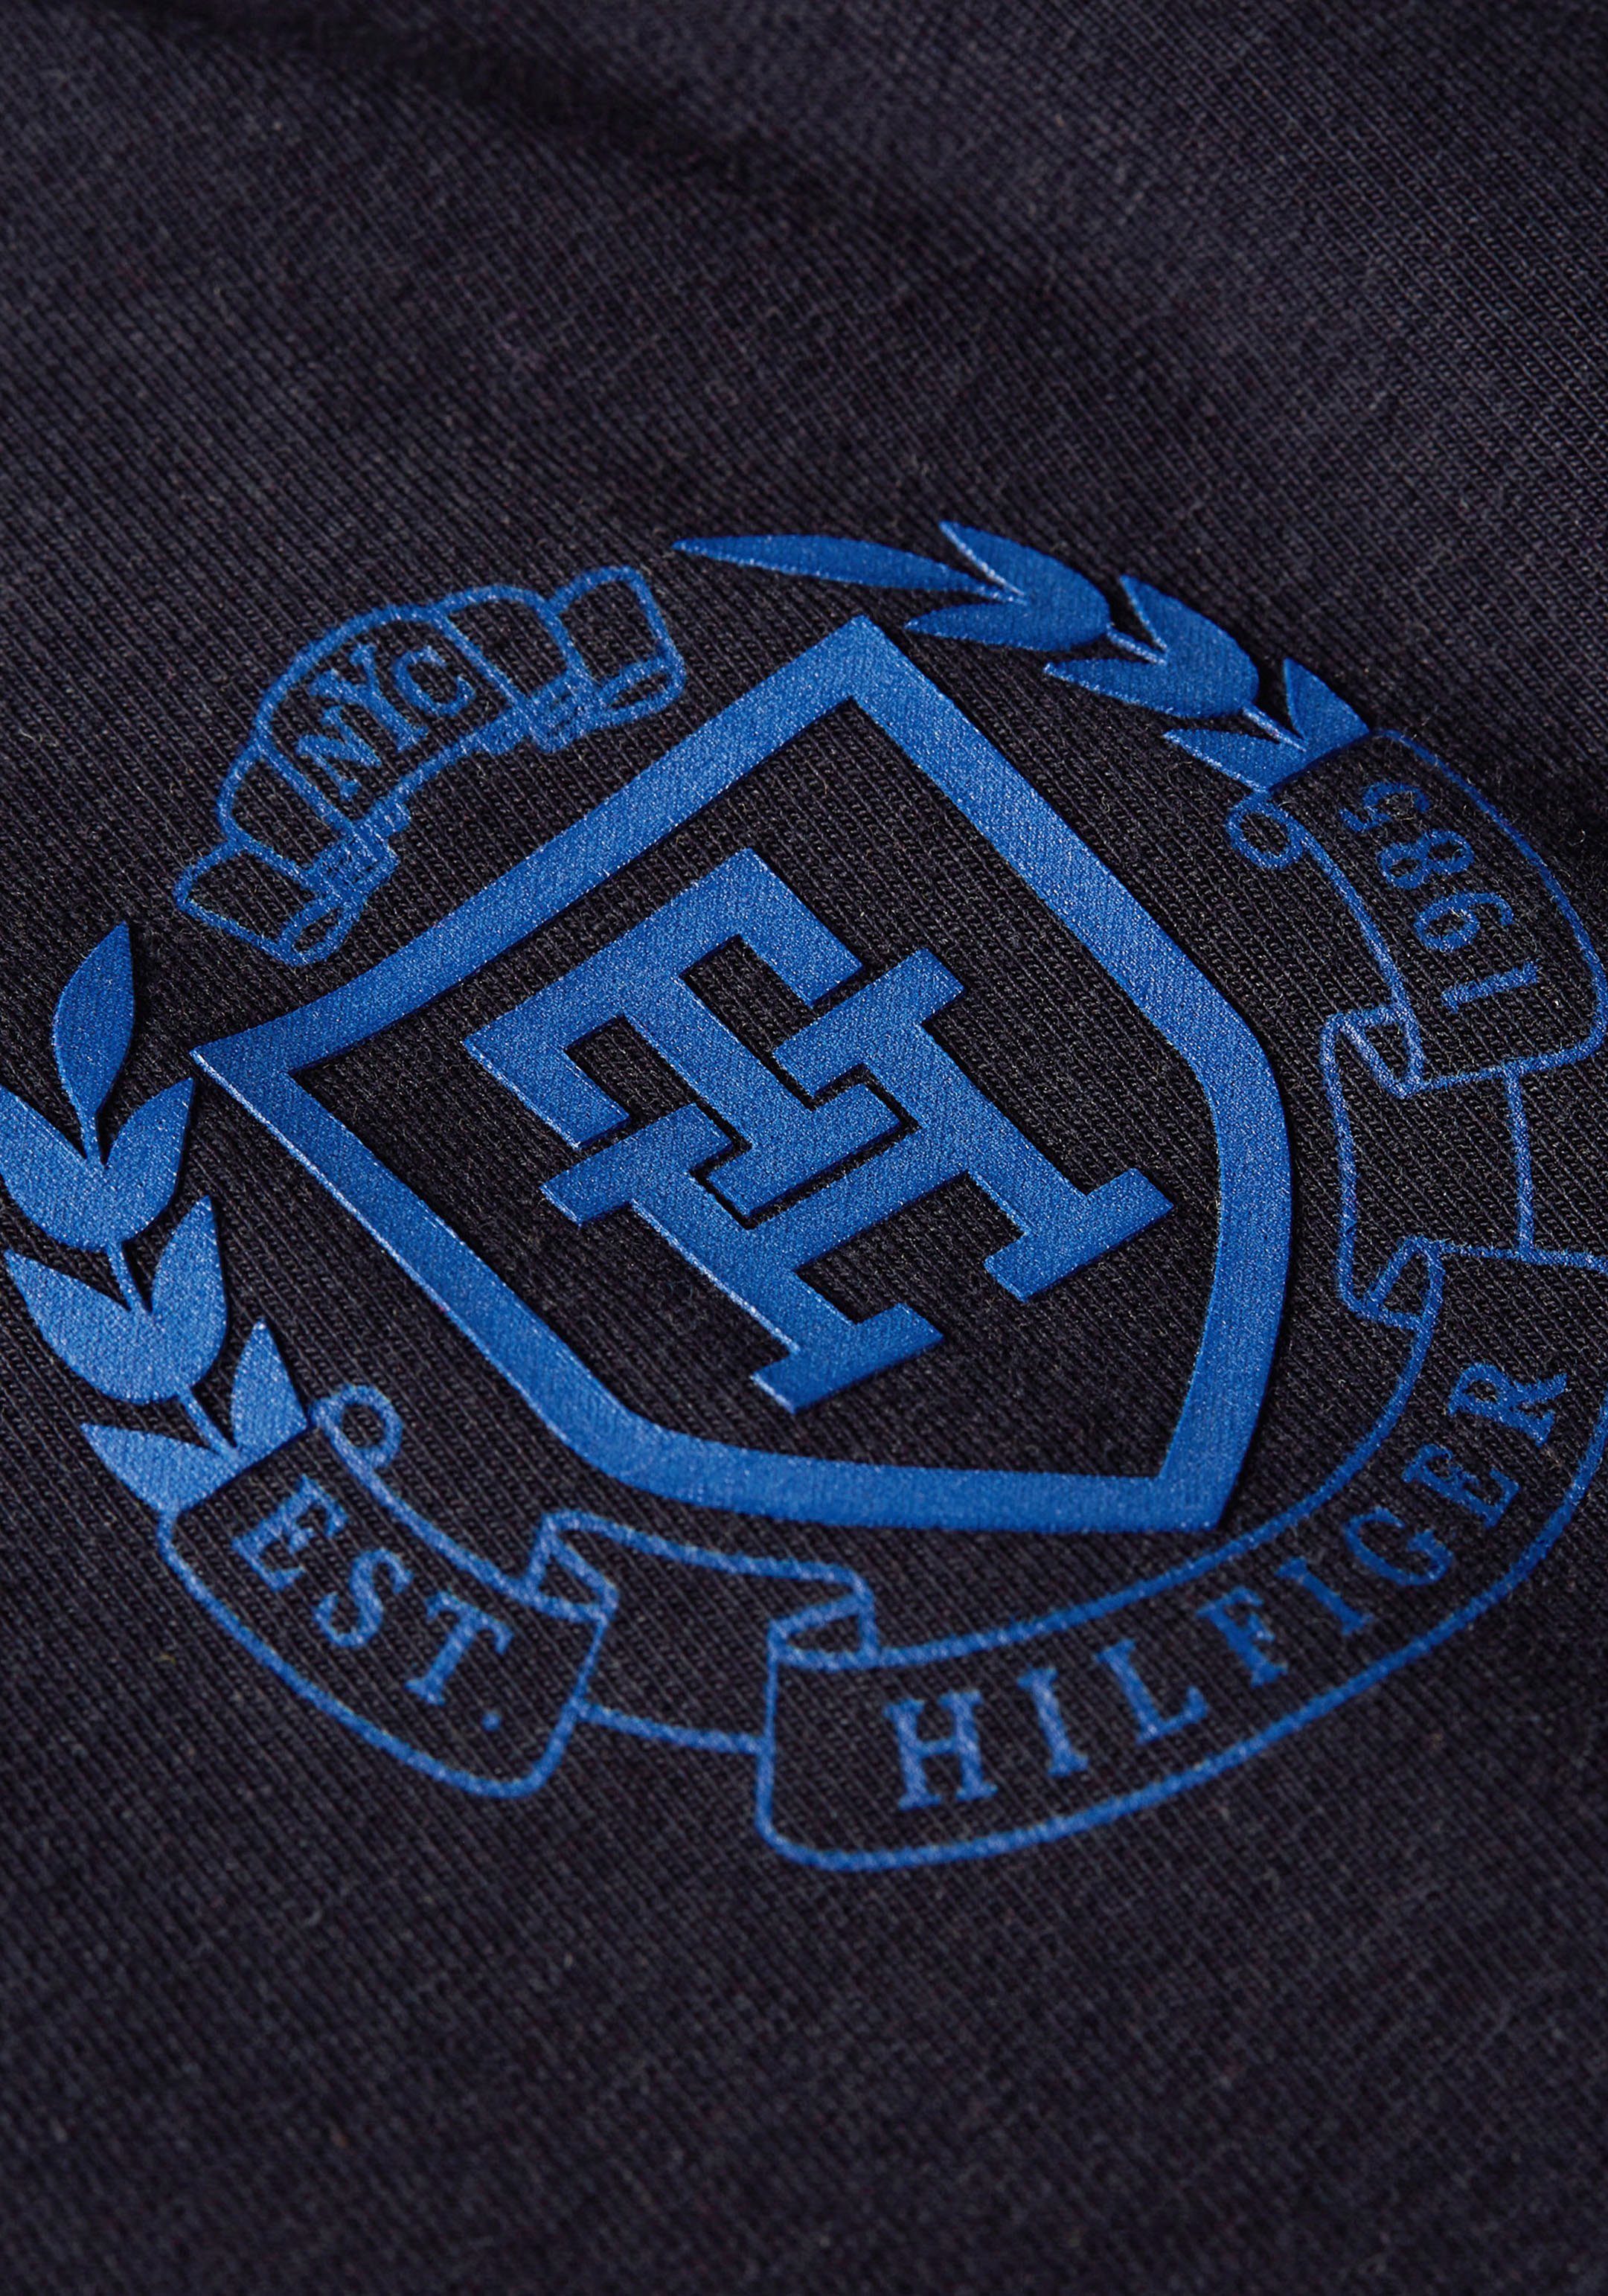 Tommy Hilfiger T-Shirt mit Markenlabel dunkelblau